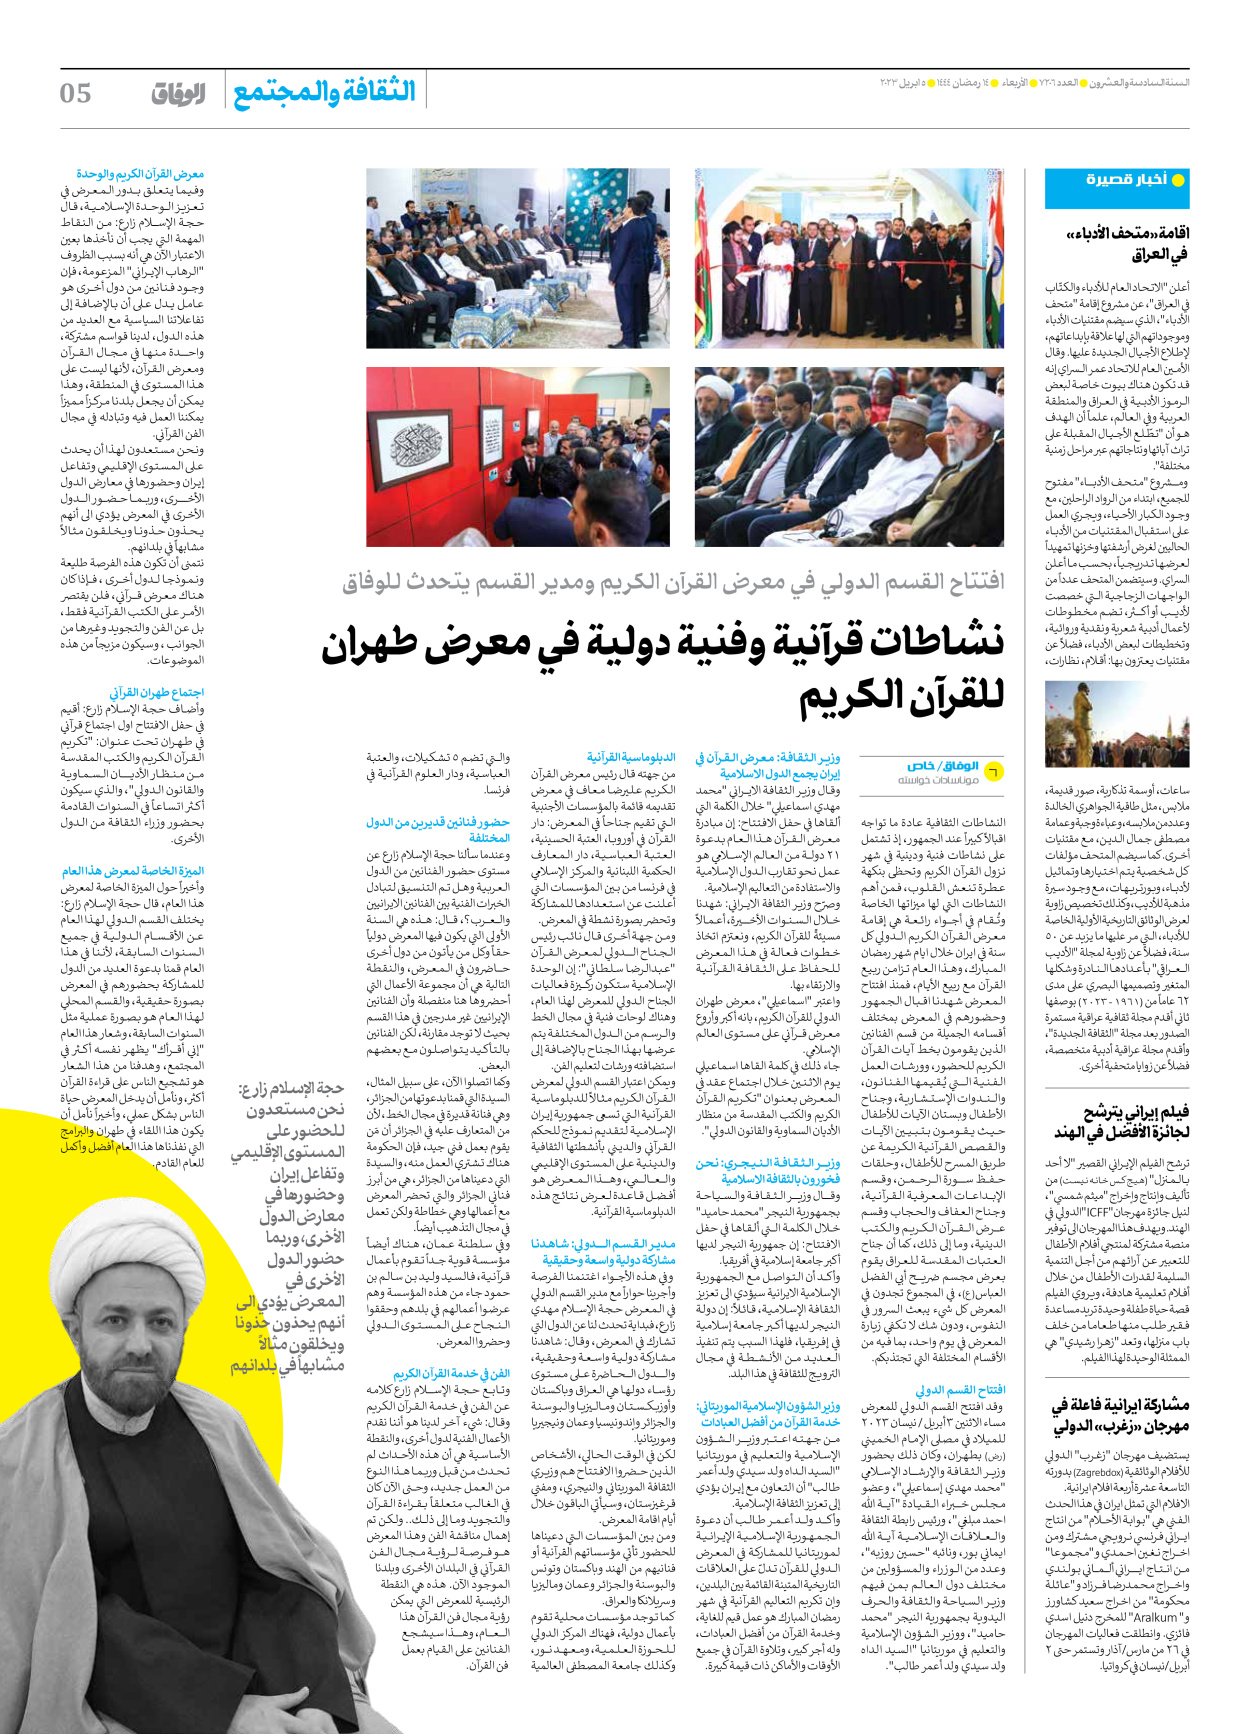 صحیفة ایران الدولیة الوفاق - العدد سبعة آلاف ومائتان وستة - ٠٥ أبريل ٢٠٢٣ - الصفحة ٥